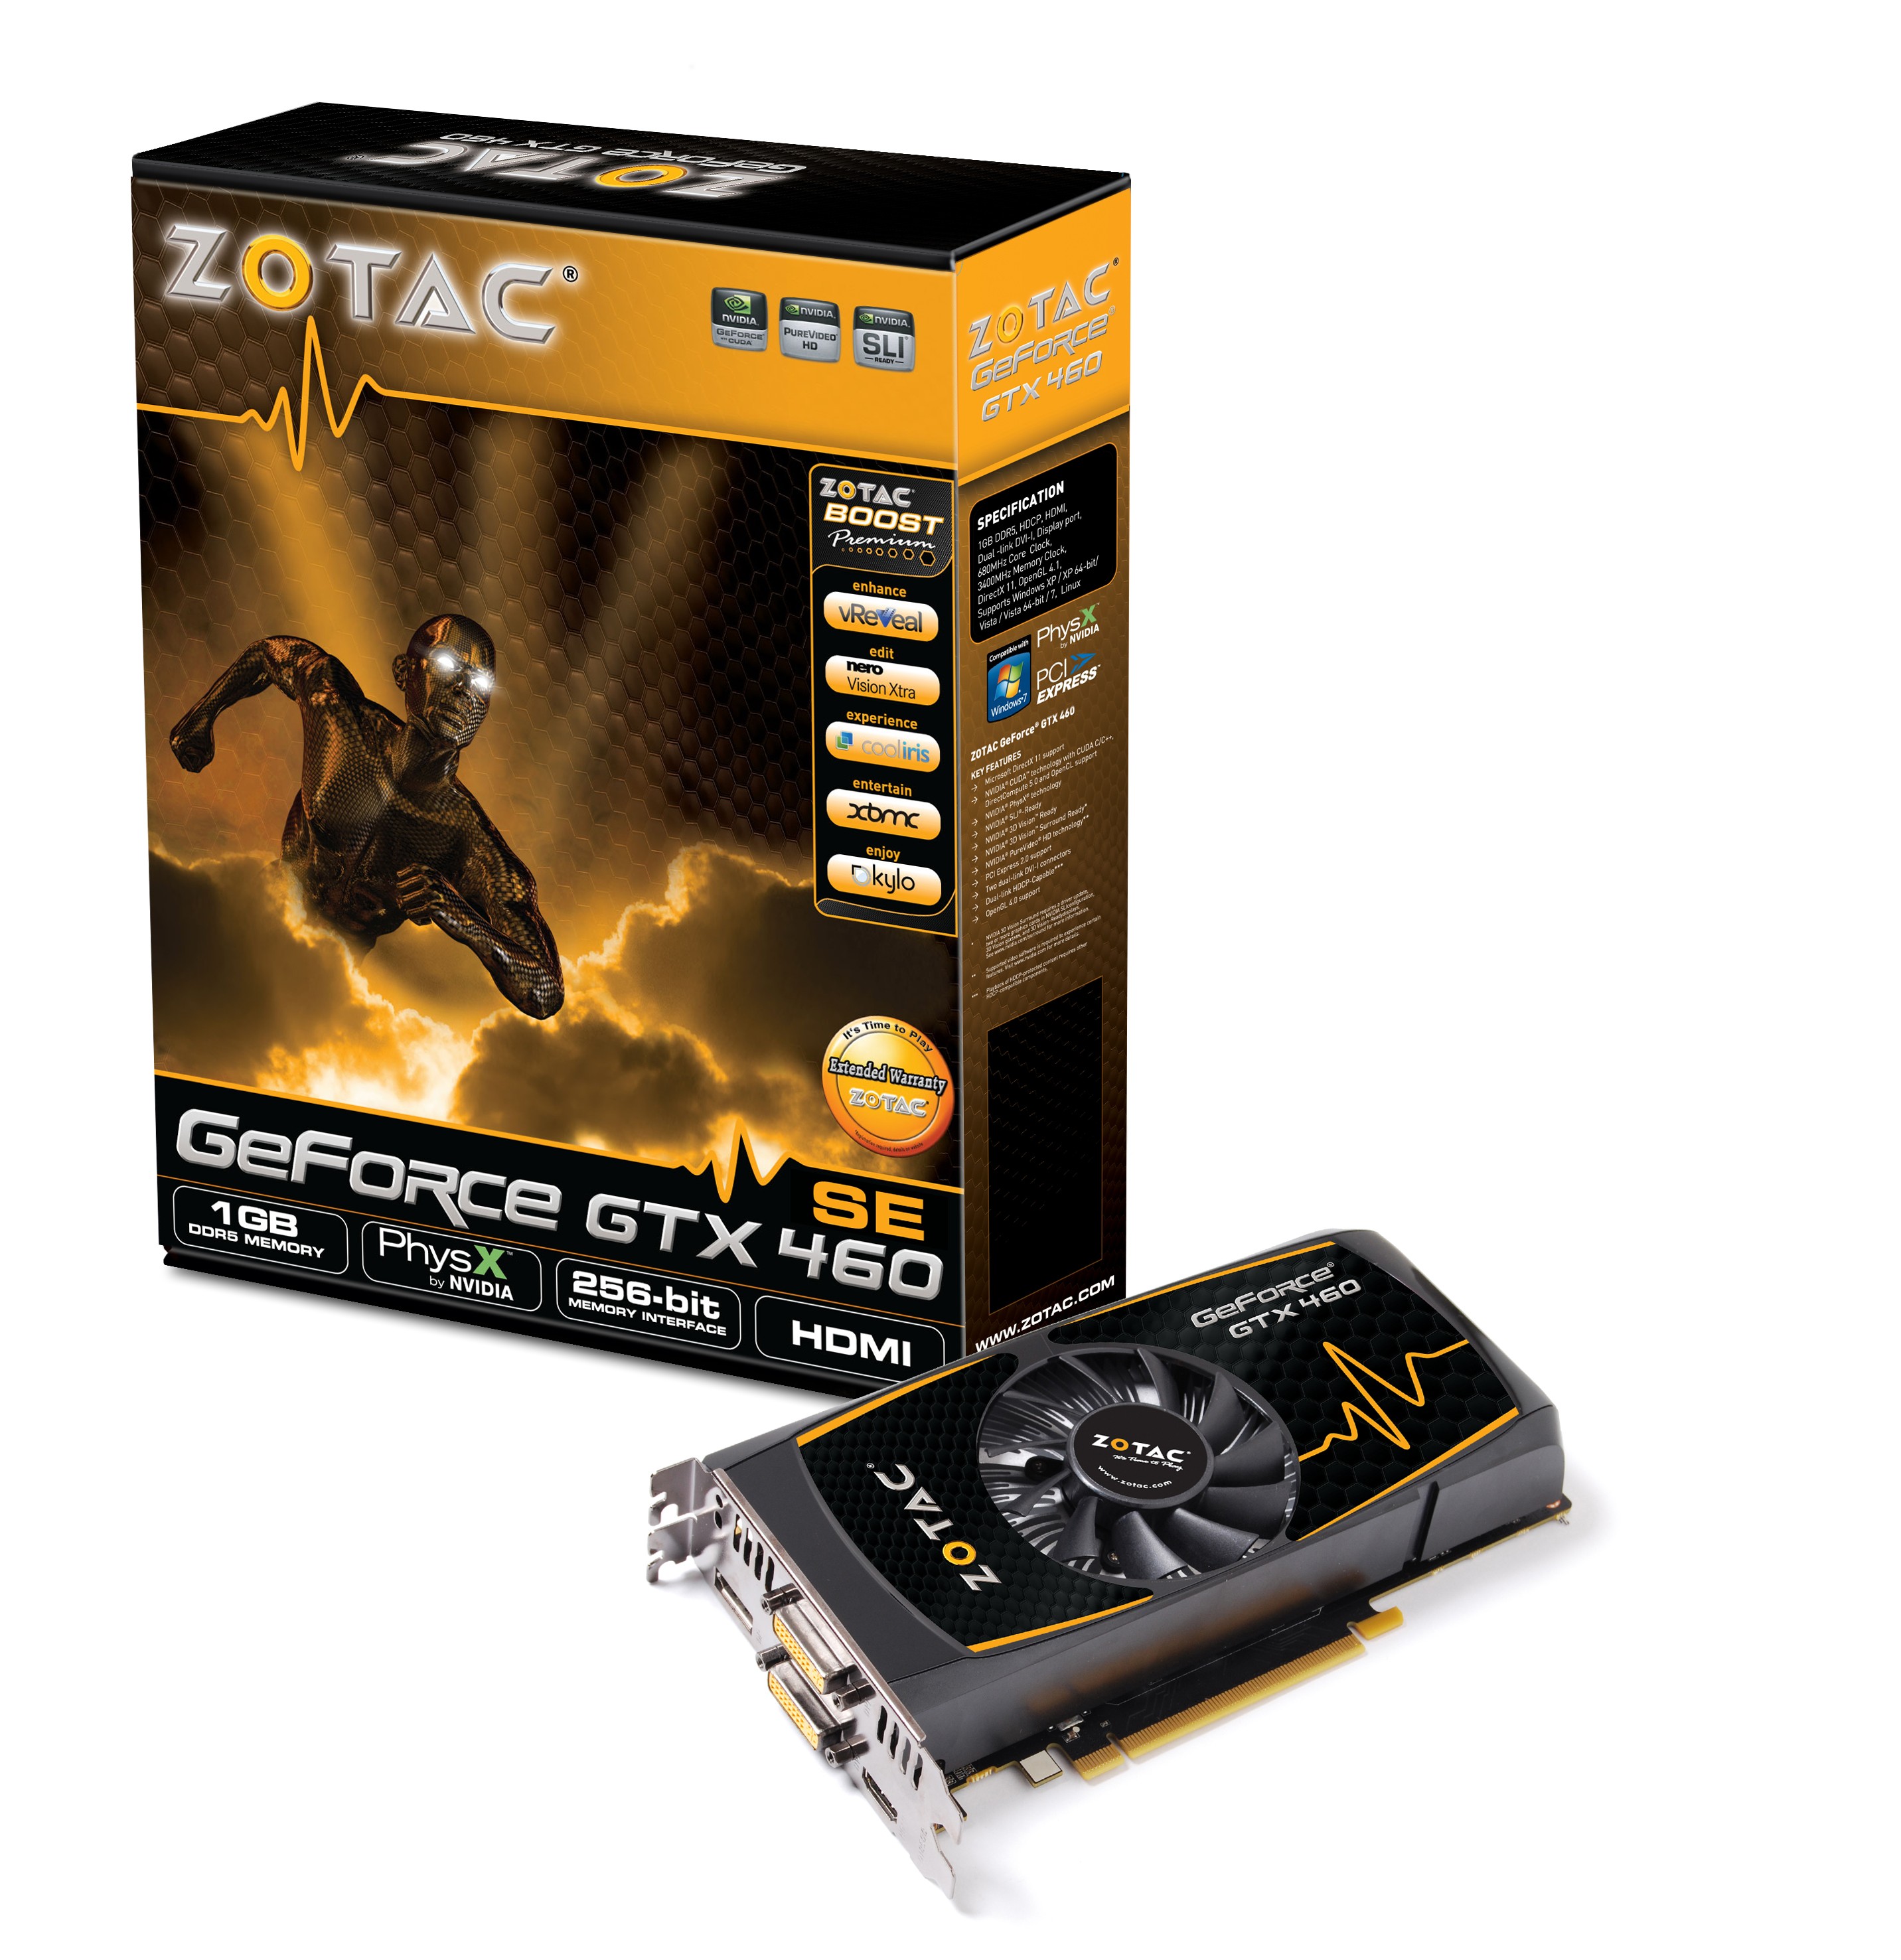 Immagine pubblicata in relazione al seguente contenuto: ZOTAC annuncia la sua scheda grafica GeForce GTX 460 SE | Nome immagine: news14208_1.jpg